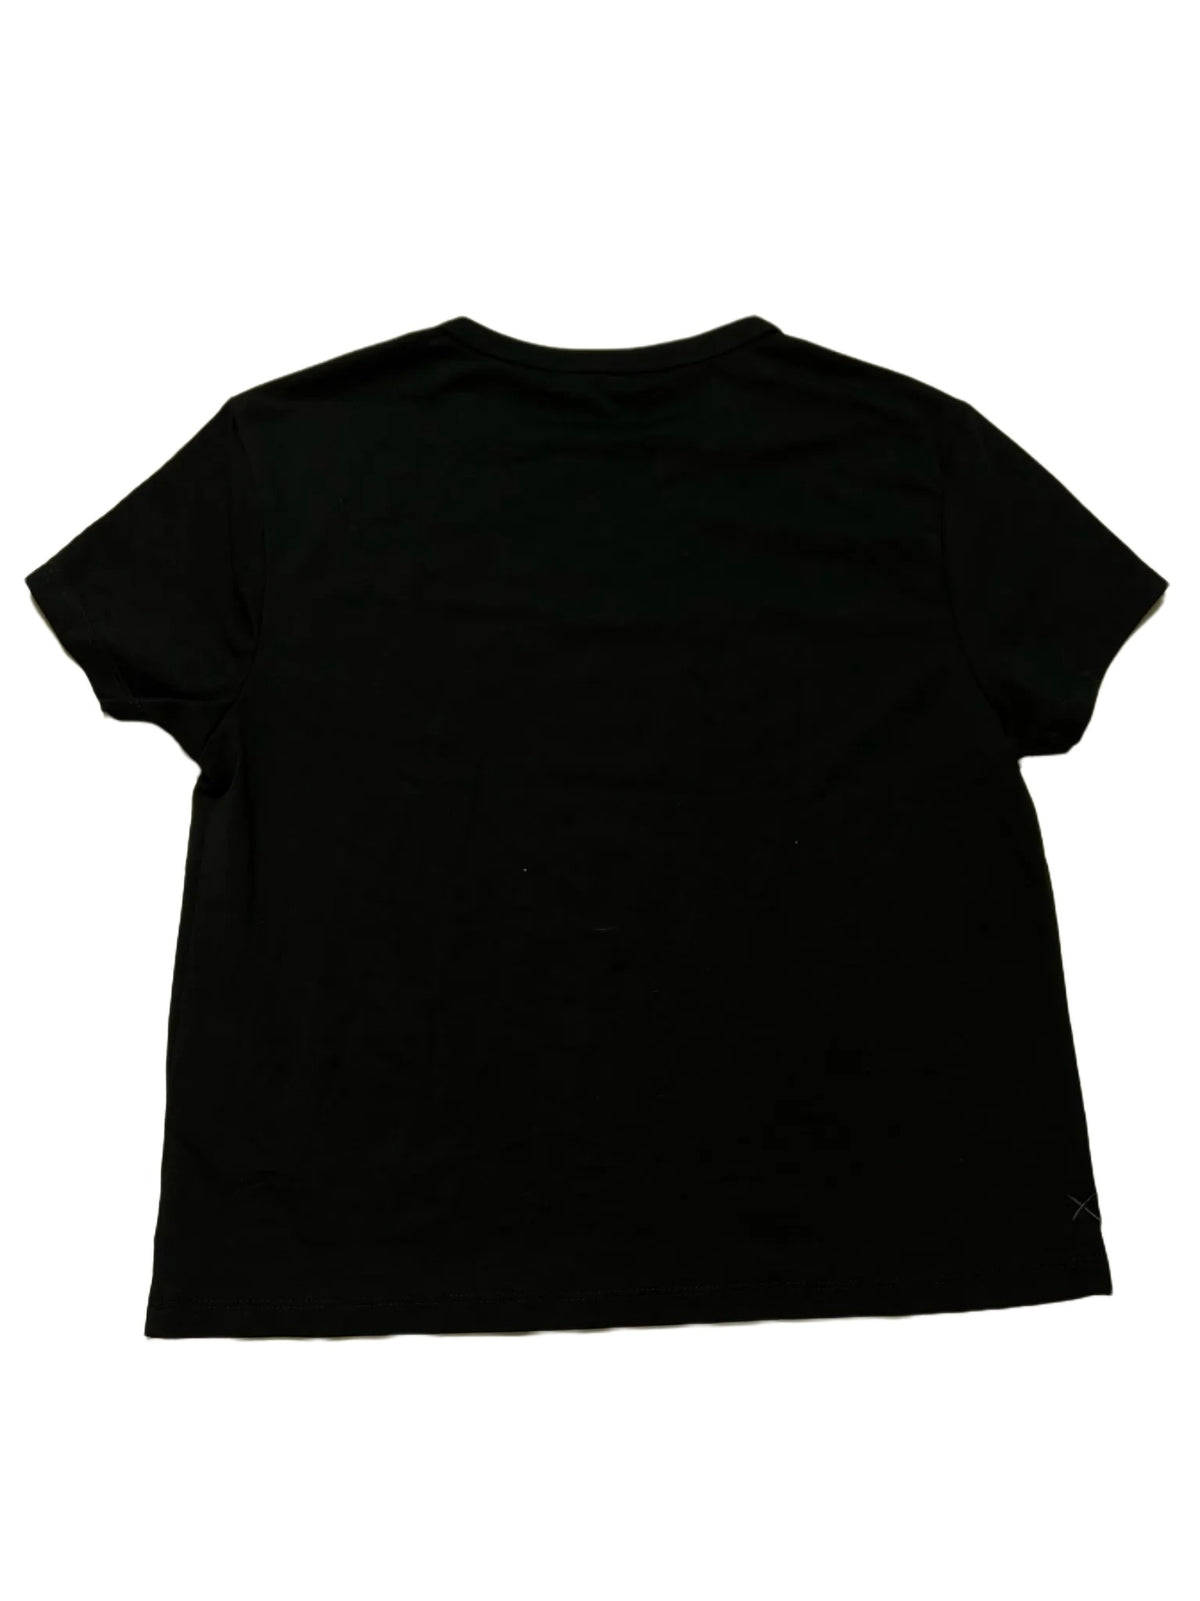 Cuts- Black T Shirt